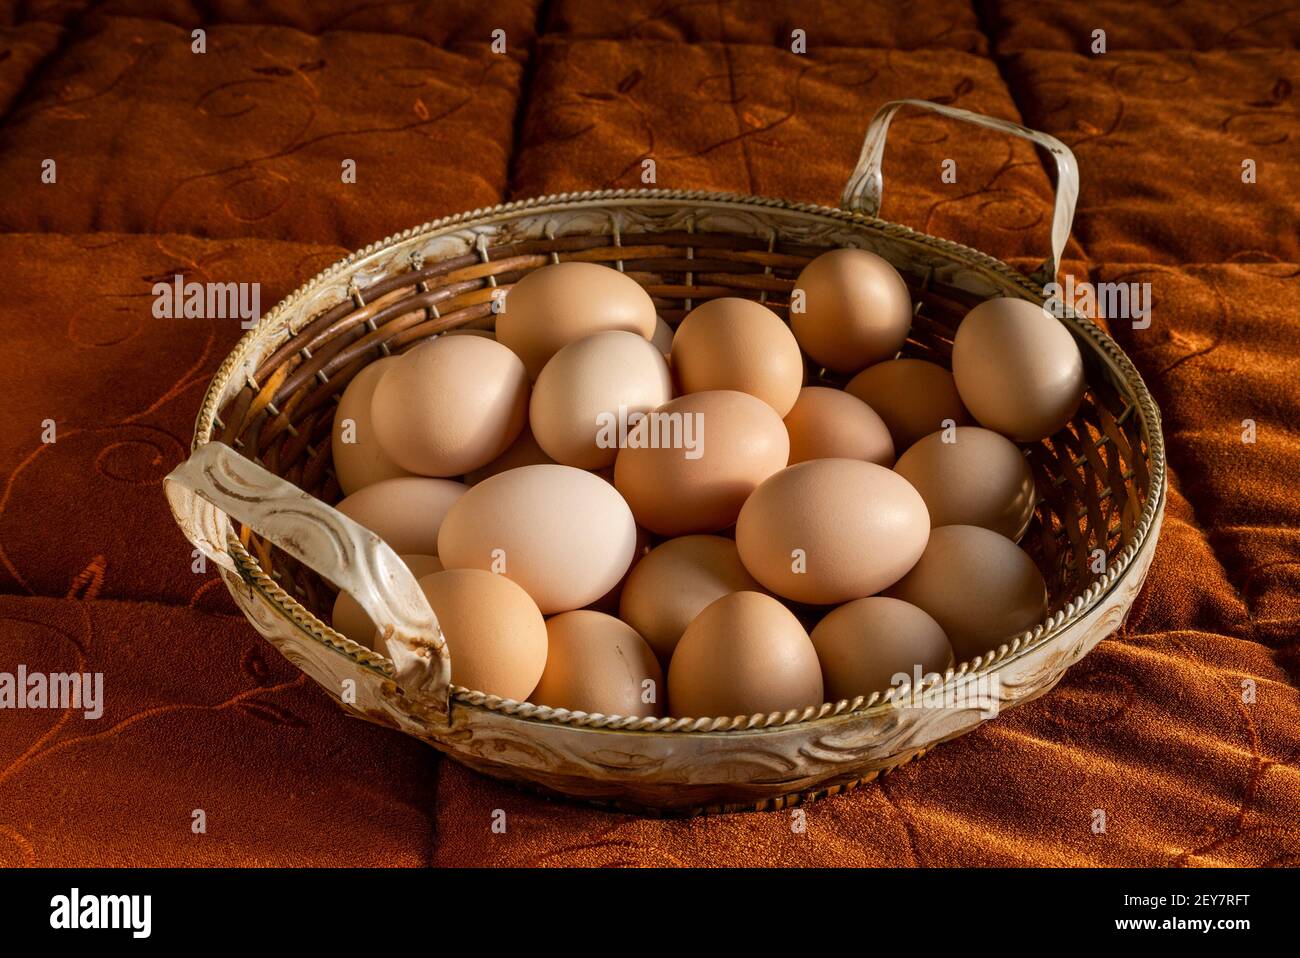 Italia: Cestino di uova appena raccolte nella polpetta di pollo. Foto Stock